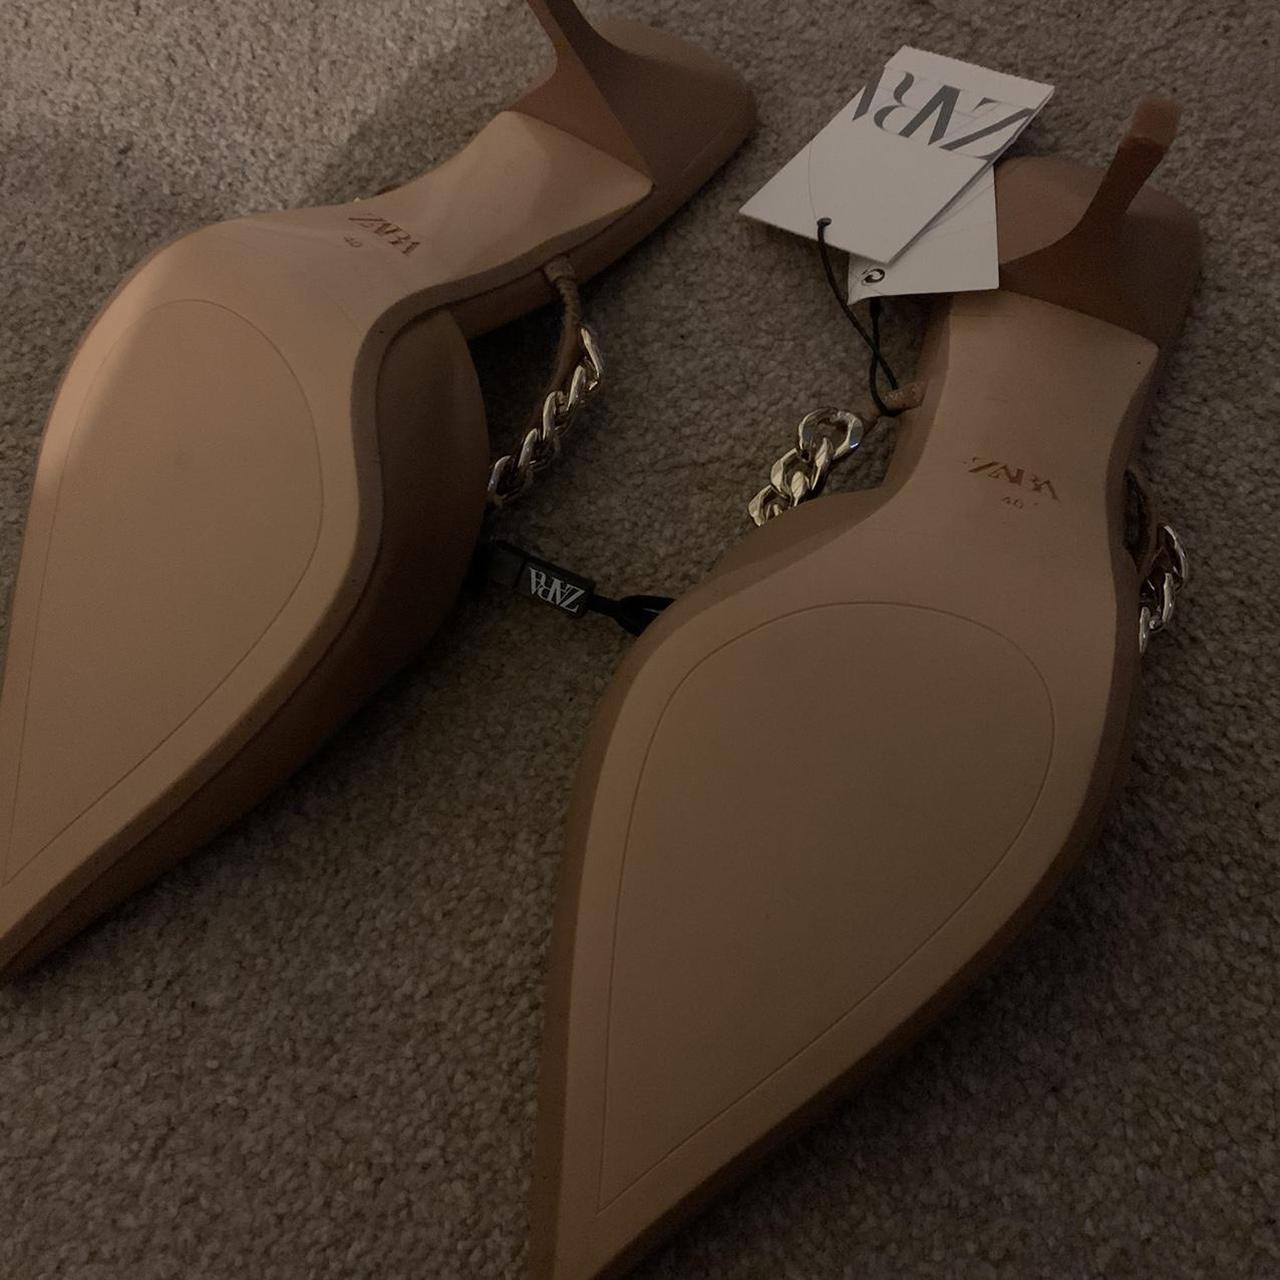 Product Image 3 - Zara nude mule heels
Size: UK